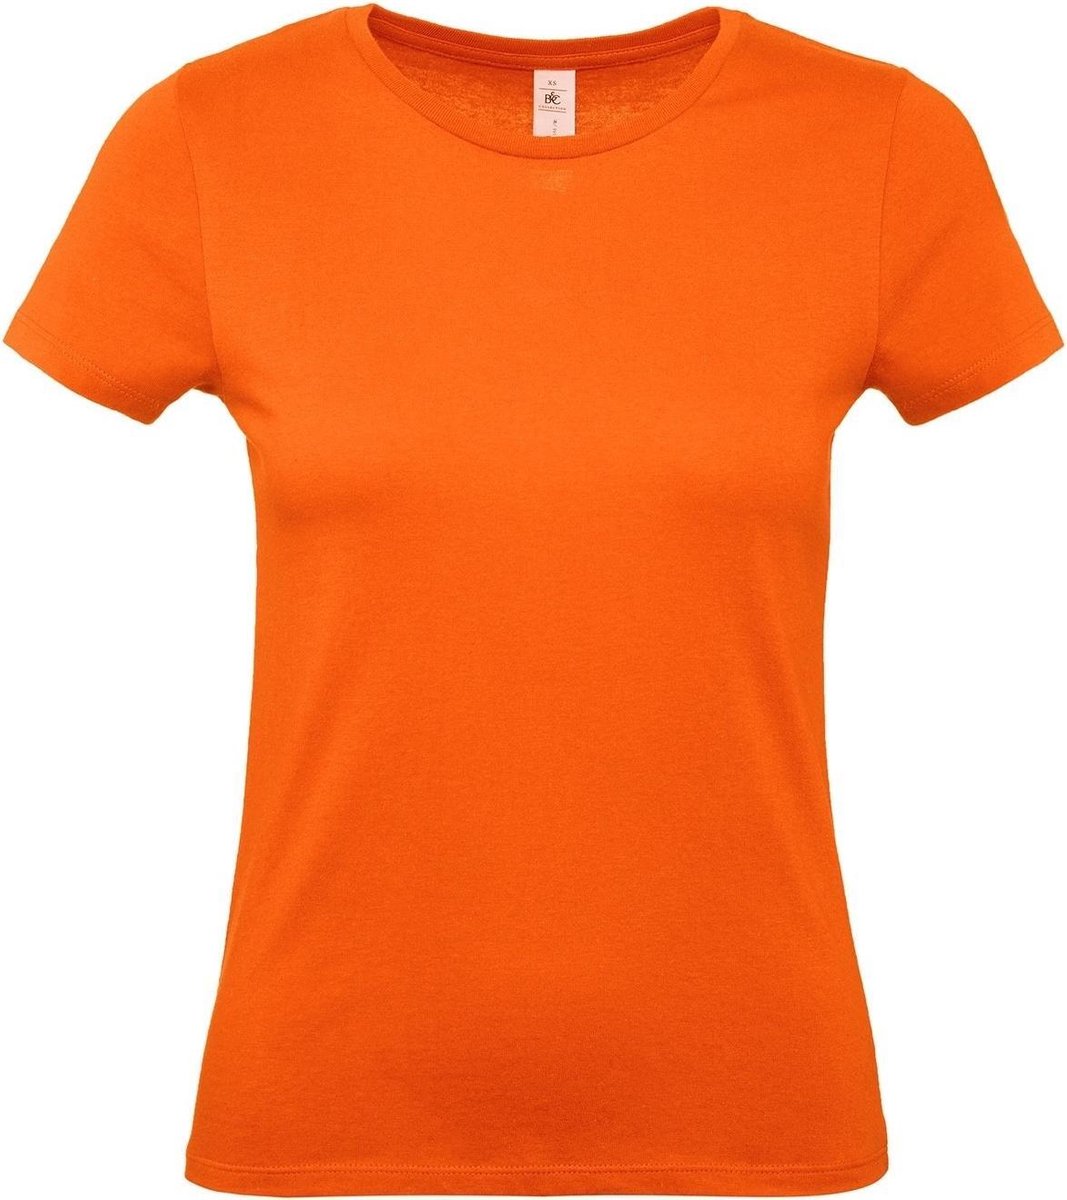 Set van 2x stuks oranje t-shirts met ronde hals voor dames - basic shirt - katoen - Koningsdag / Nederland supporter, maat: L (40)